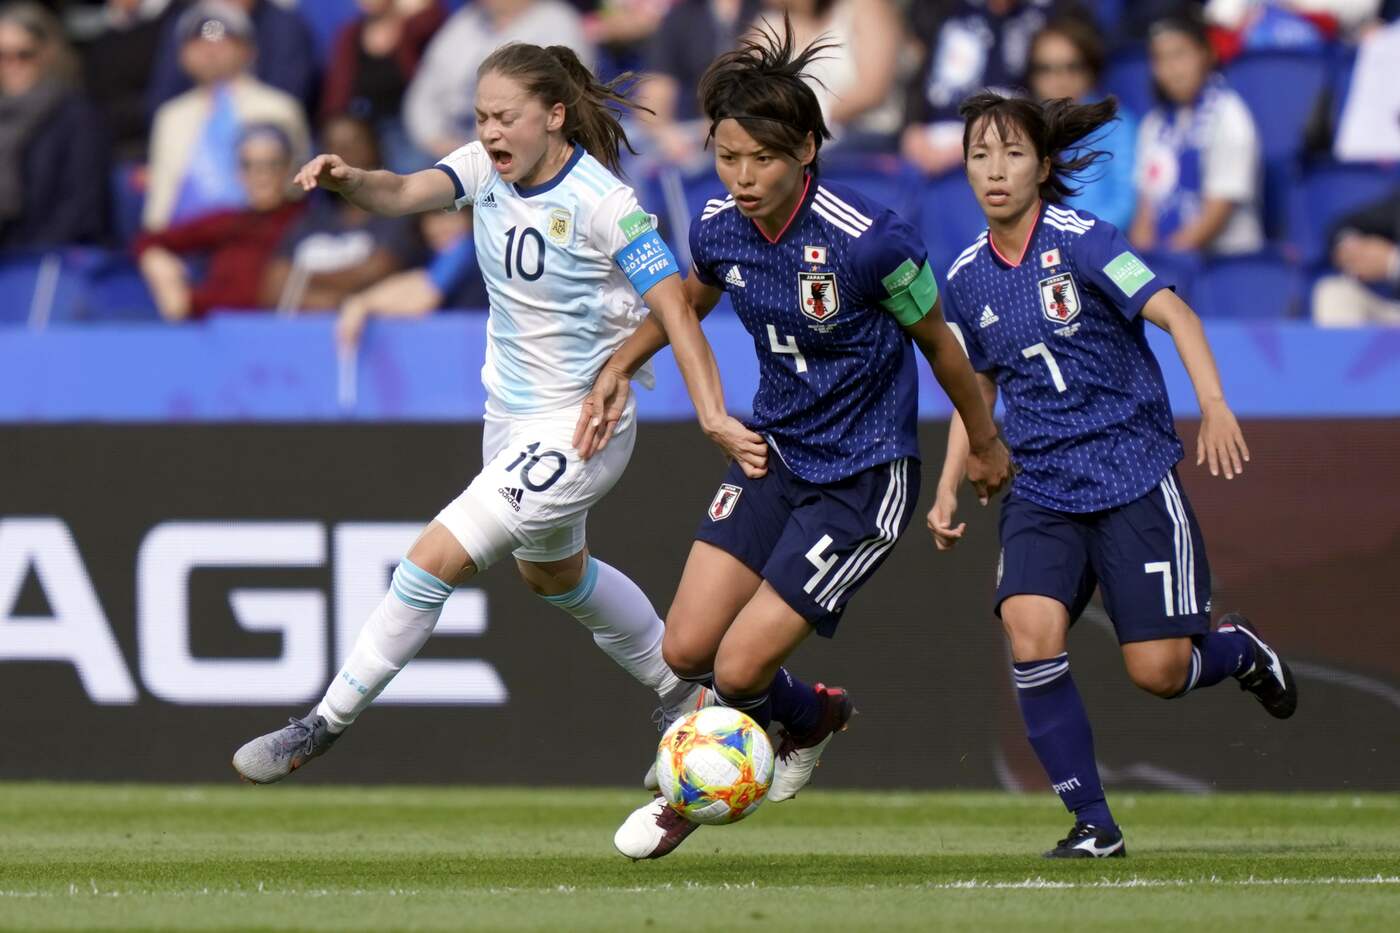 Mondiale donne, Giappone-Scozia venerdì 14 giugno: analisi e pronostico della seconda giornata del girone D